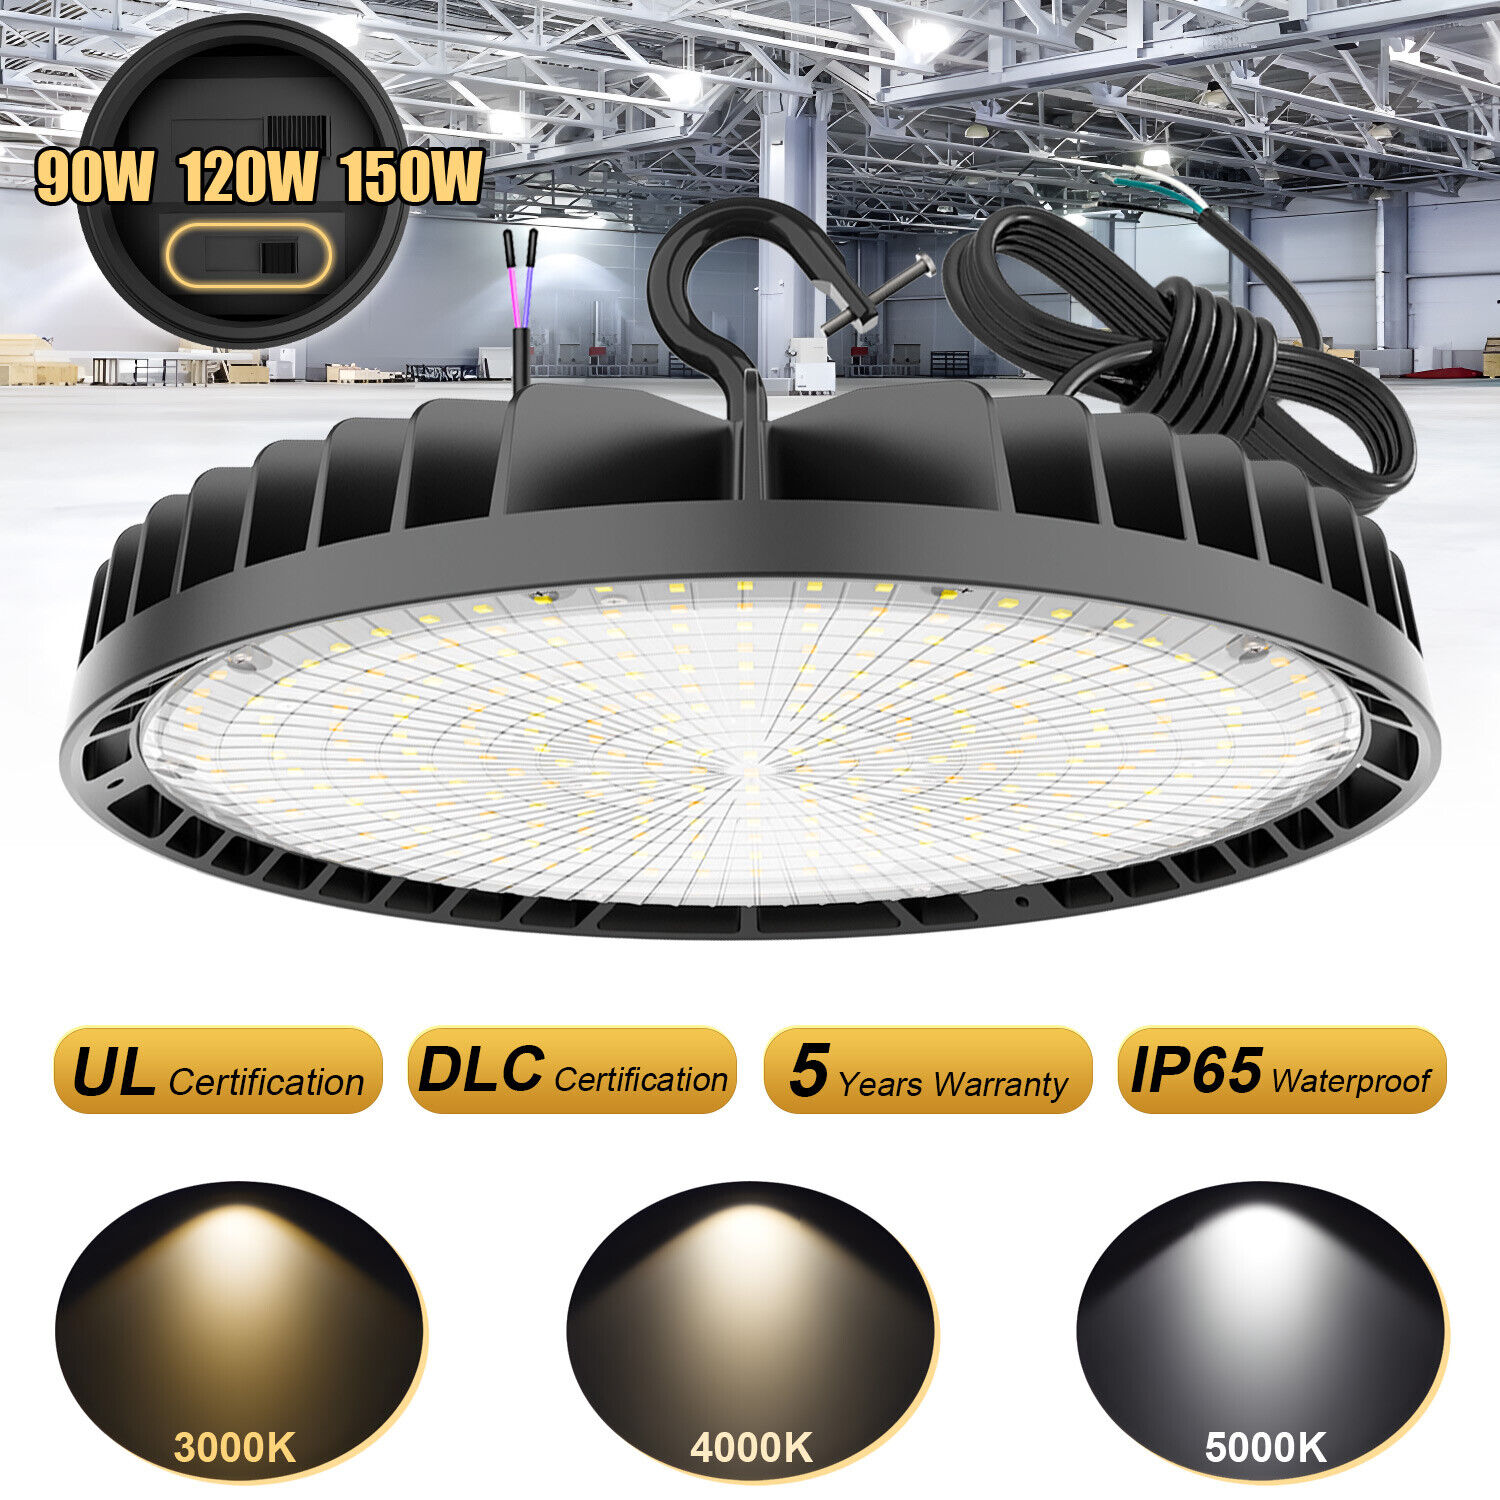 150W UFO LED High Bay Light 3000K/4000K/5000K Warehouse Garage Workshop Lighting